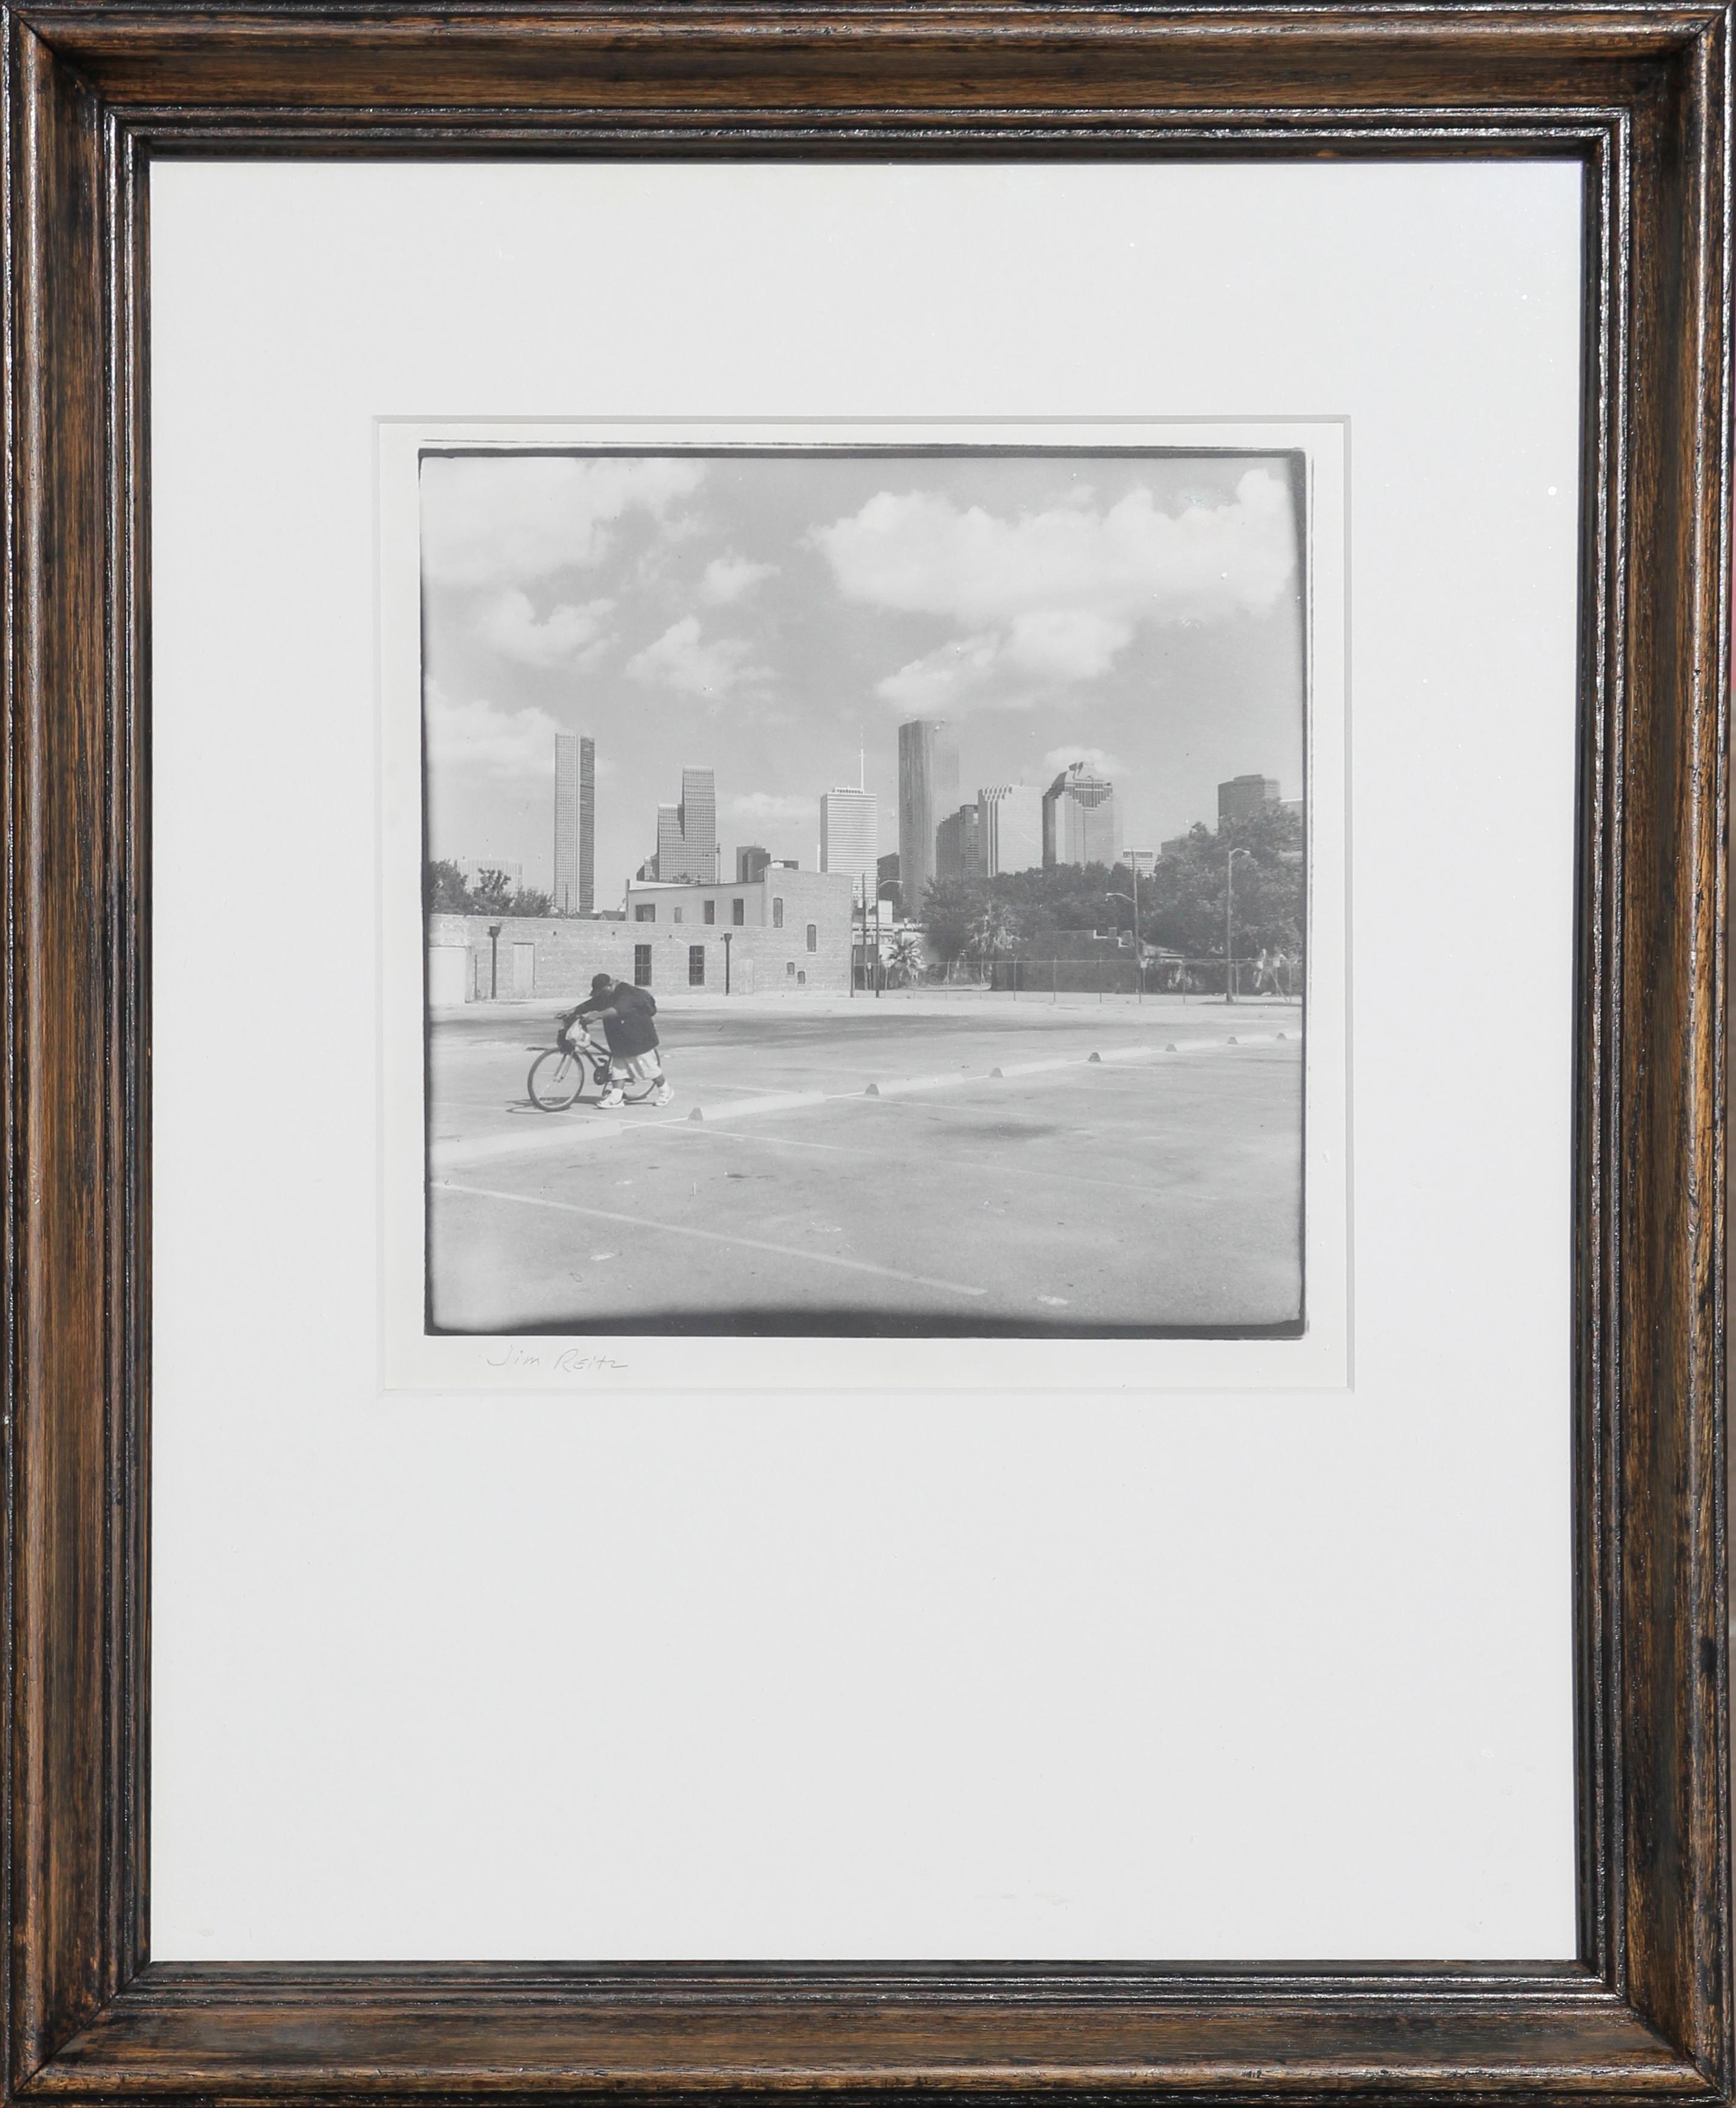 Schwarz-Weiß- Urban-Fotografie eines Mannes mit Fahrrad gegen die Skyline von Houston, TX